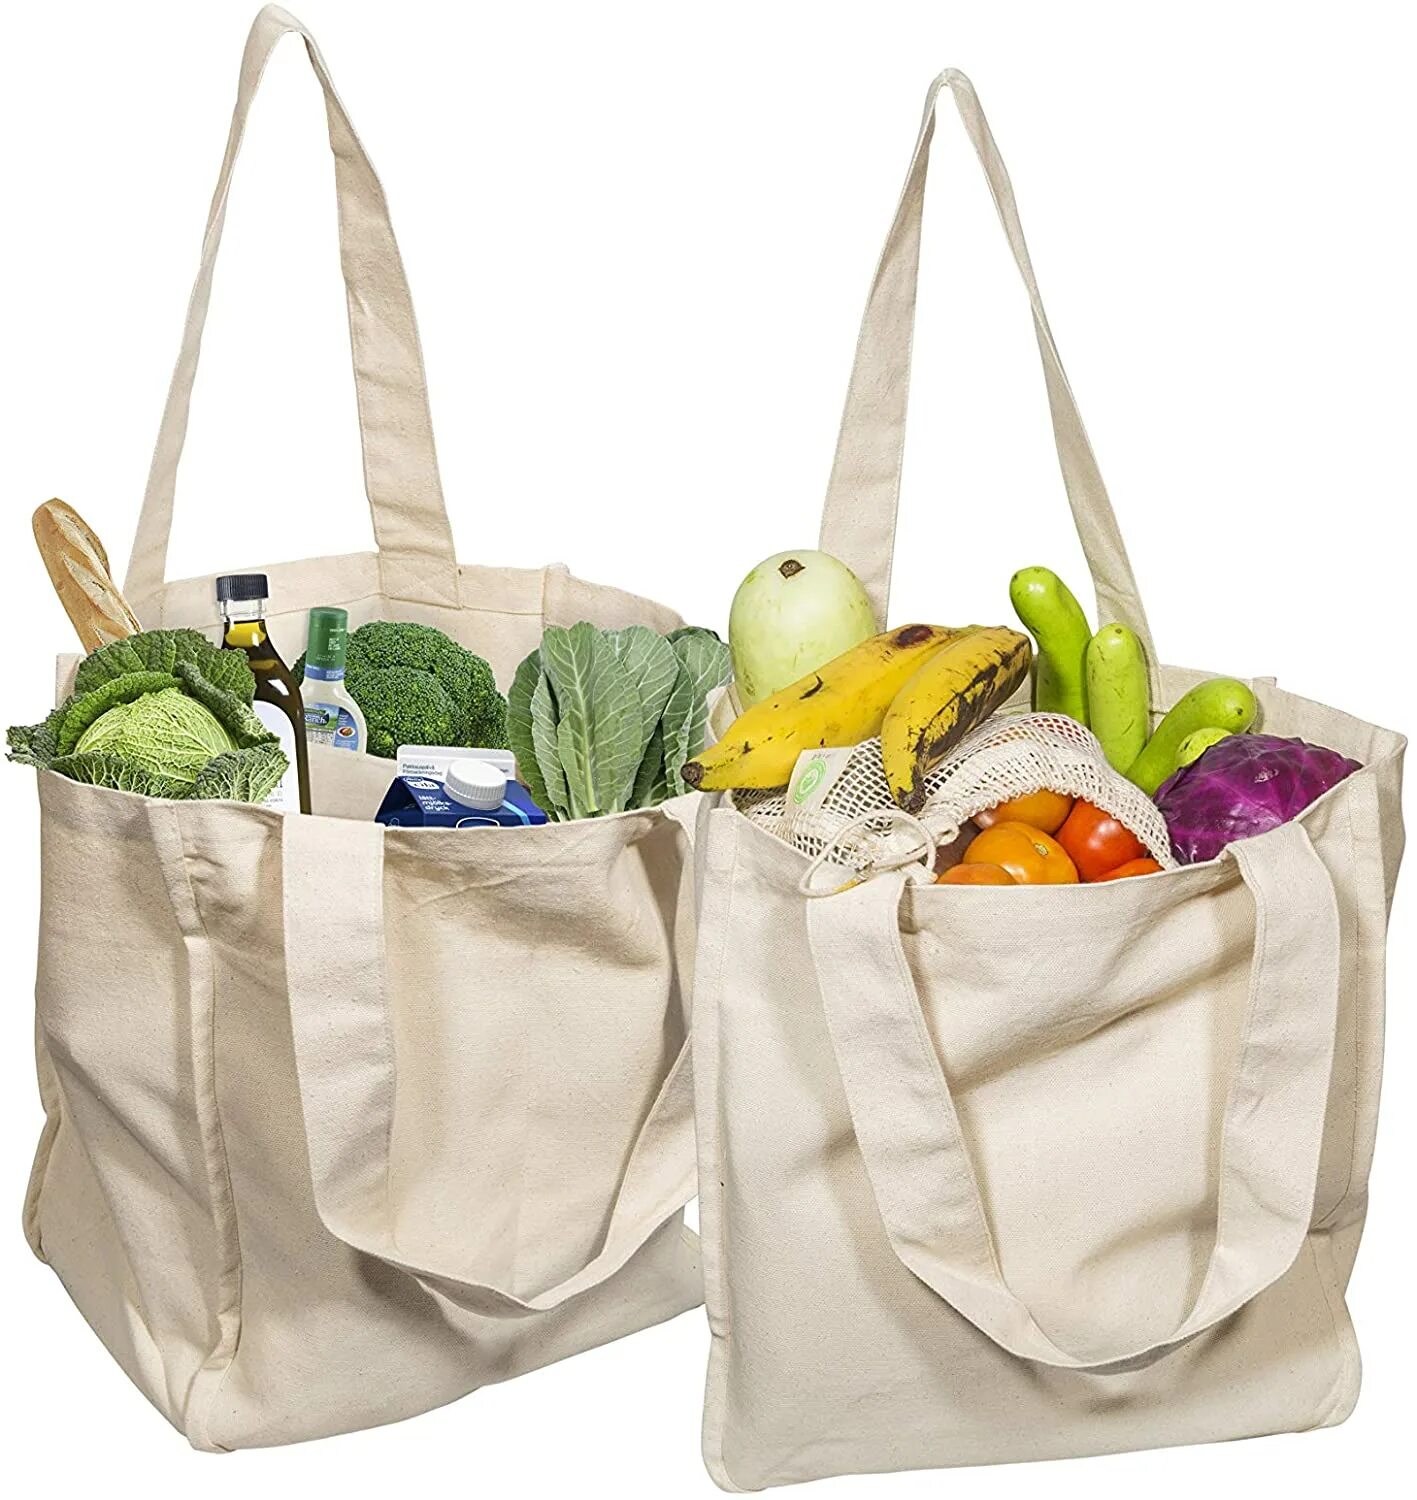 Продуктовая сумка. Сумка для продуктов. Сумка для продуктов тканевая. Хозяйственная сумка для продуктов. Многоразовые сумки для продуктов.